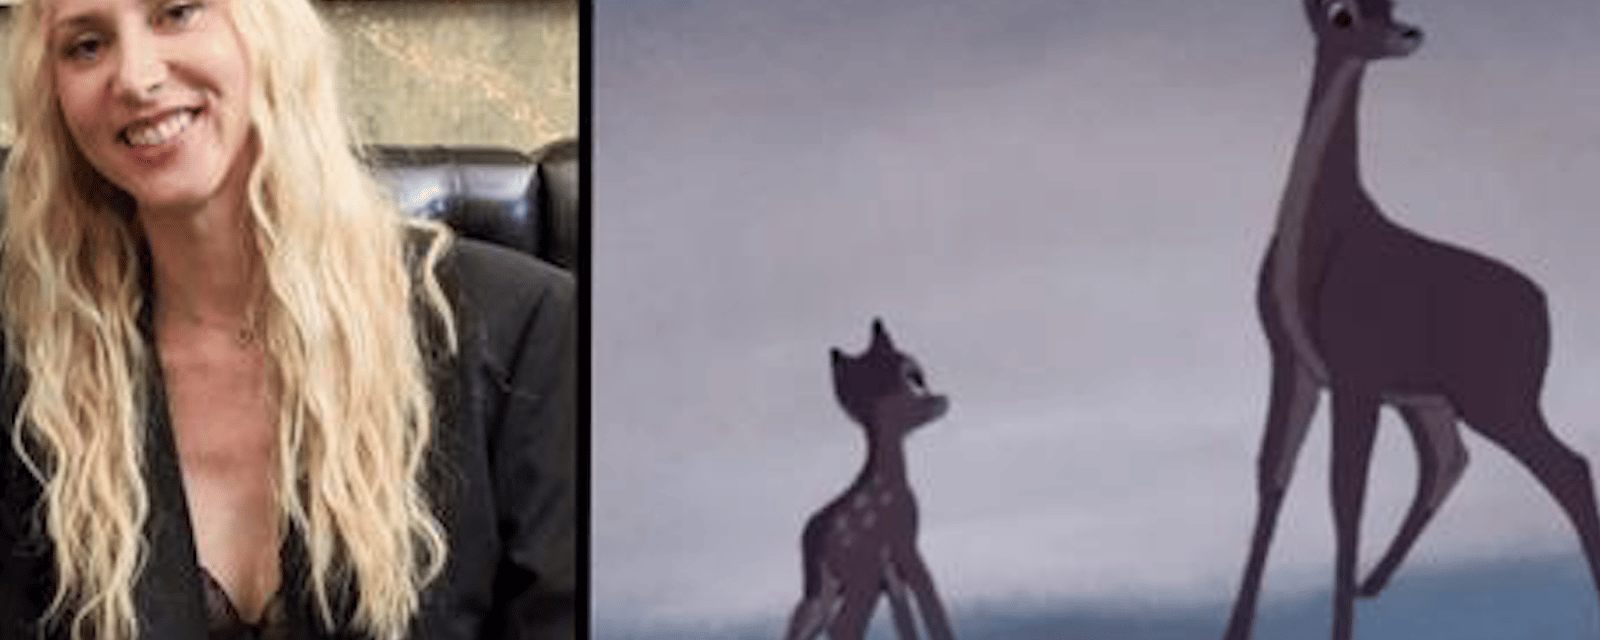 Une scénariste demande la suppression d’une célèbre scène du film Bambi